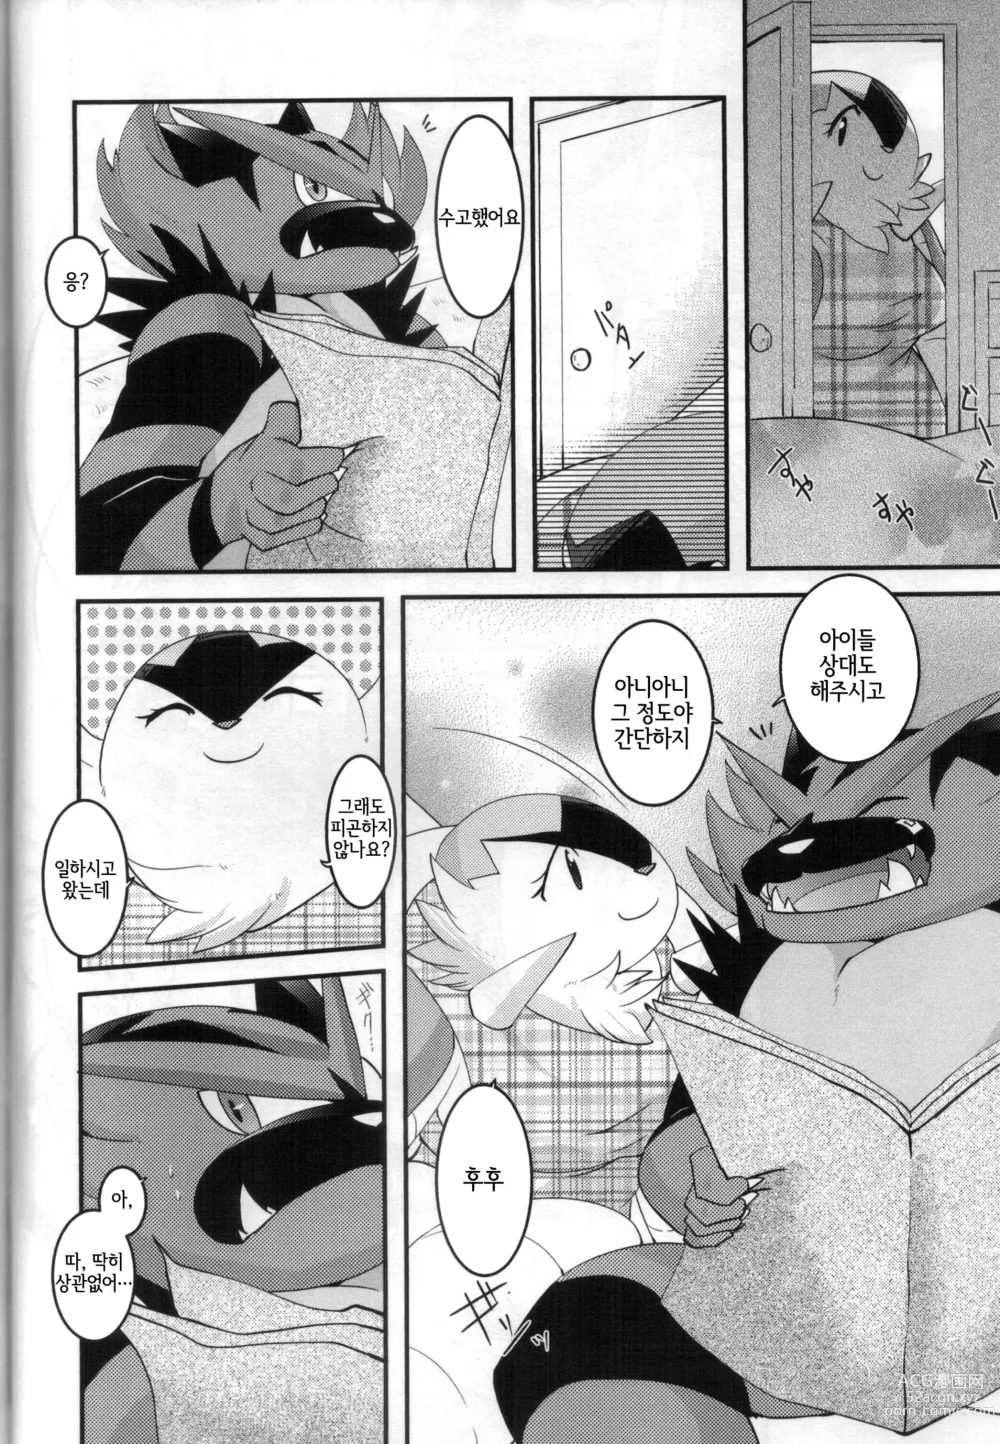 Page 7 of doujinshi 아빠도 엄마한테 어리광 부리고 싶어!